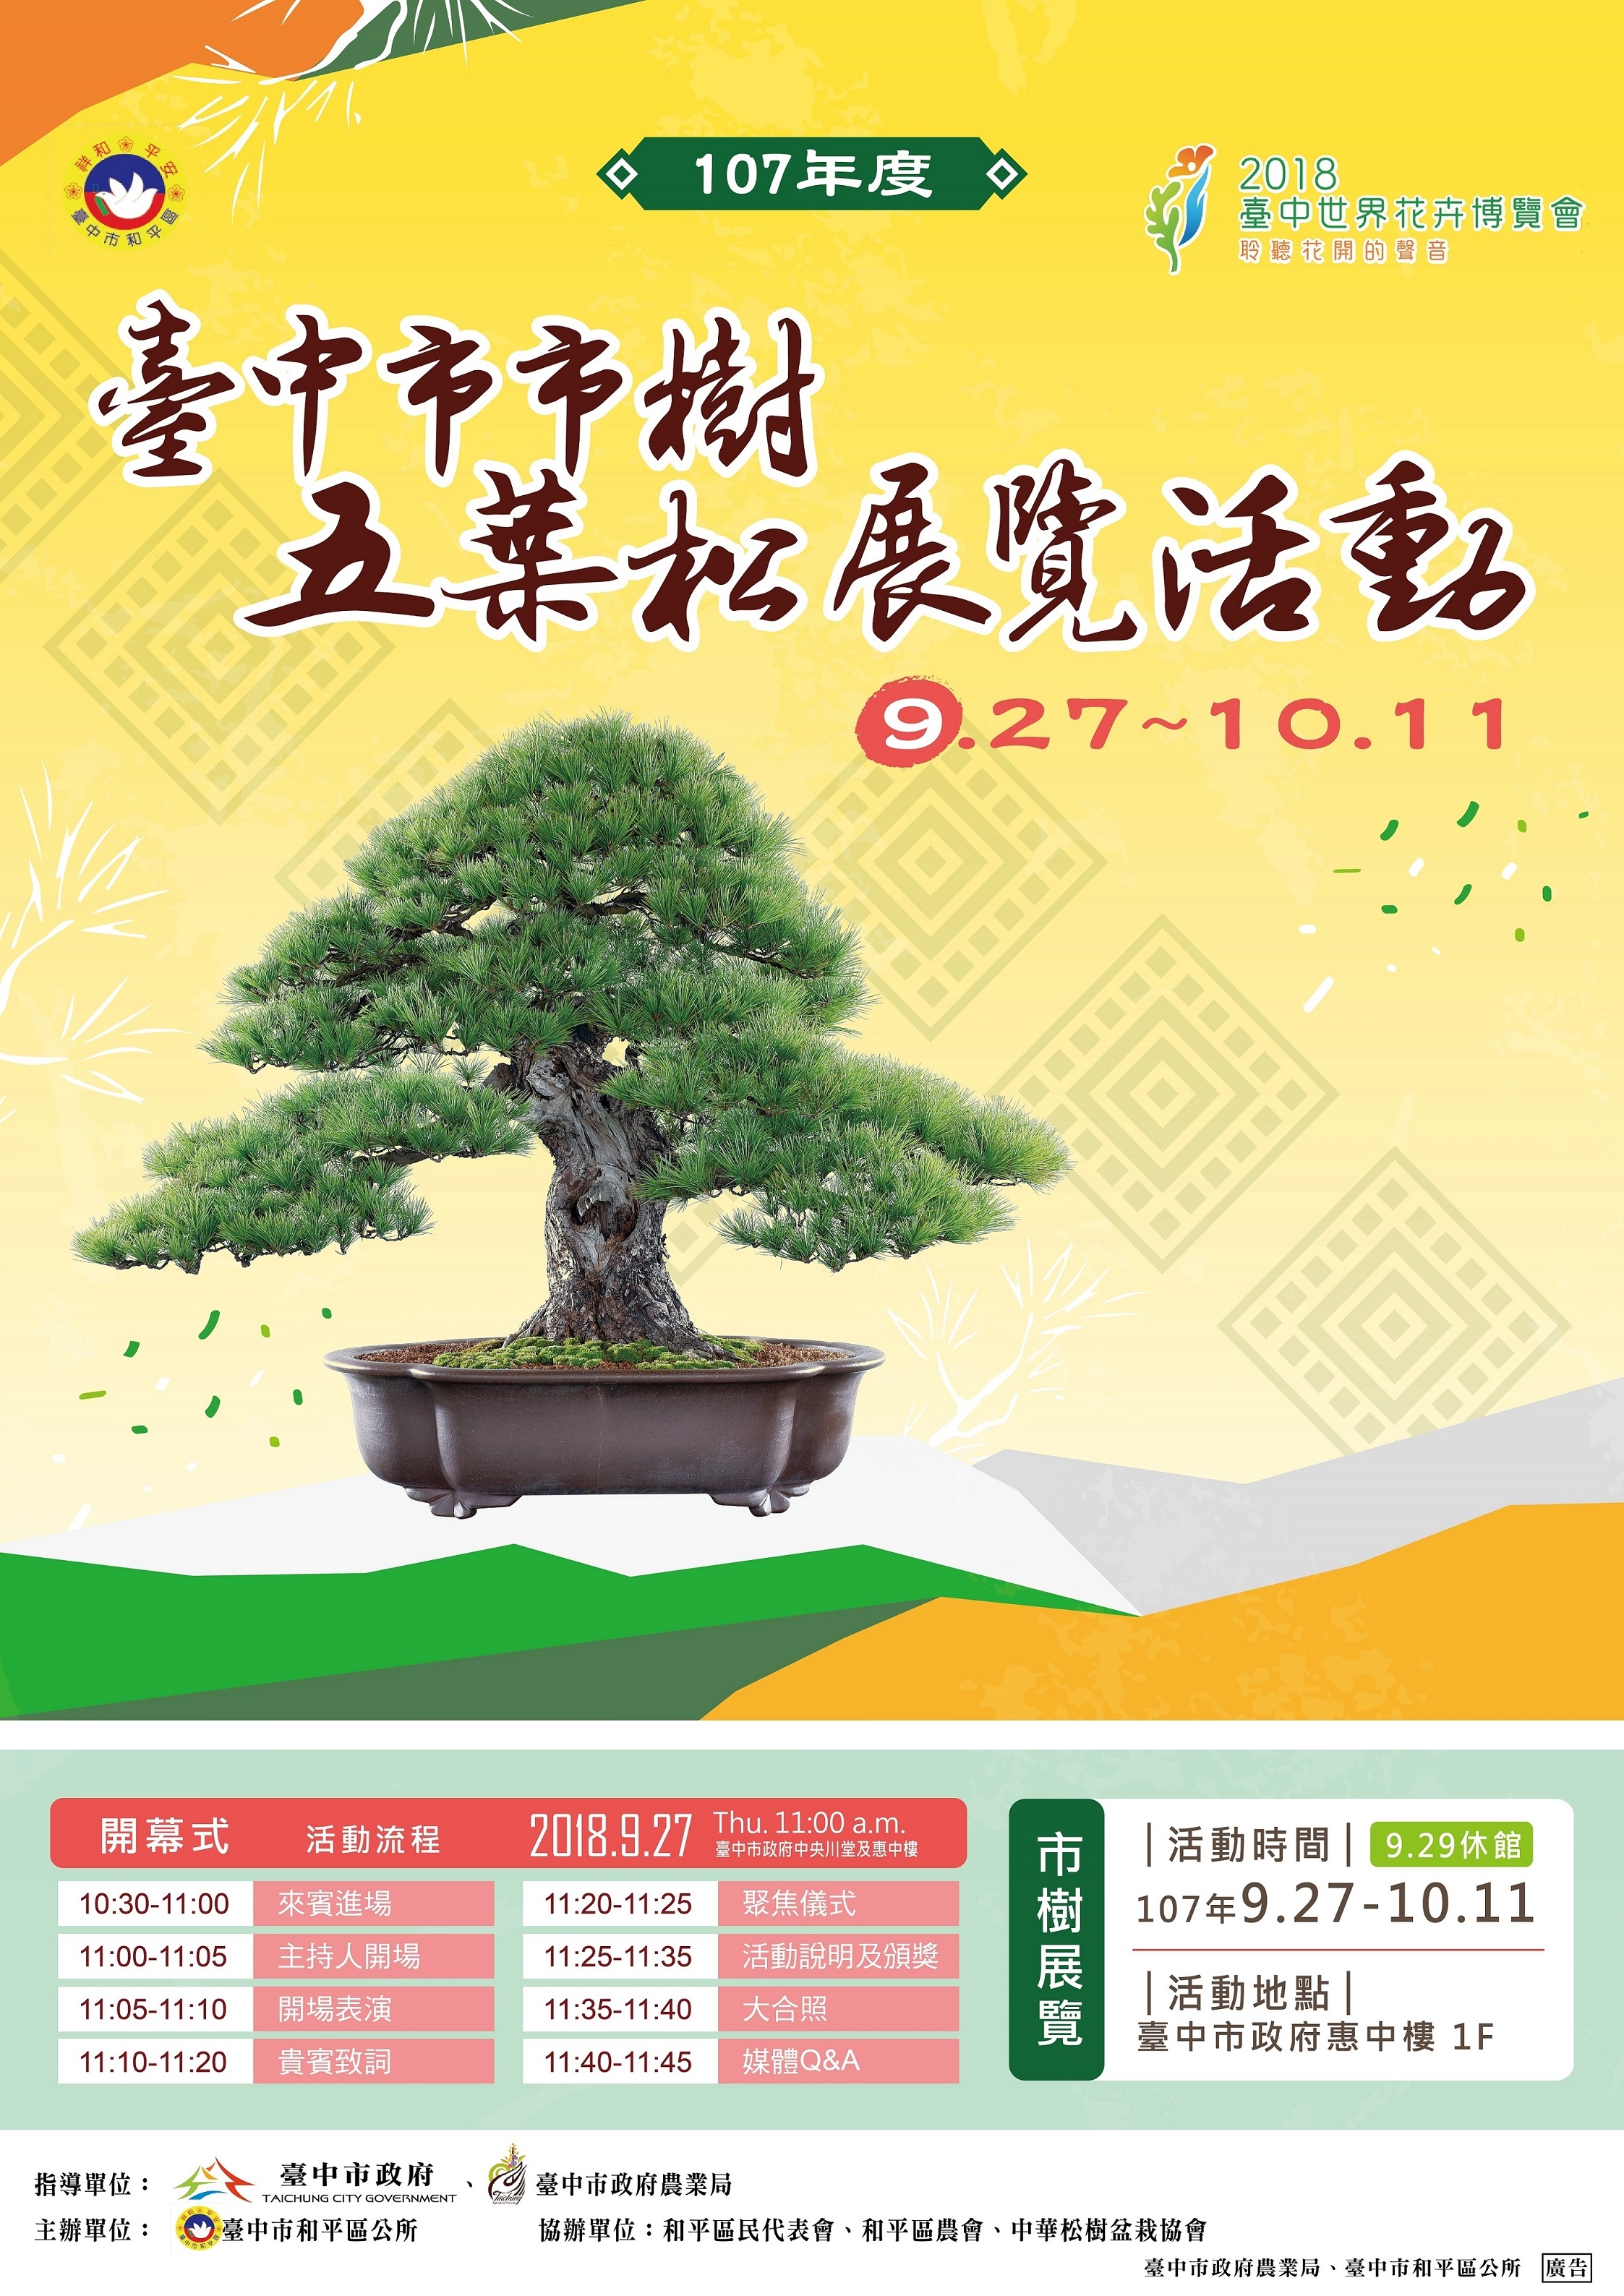 「107年度台中市市樹五葉松展覽」活動，訂於107年9月27日假臺中市政府中央川堂辦理。|